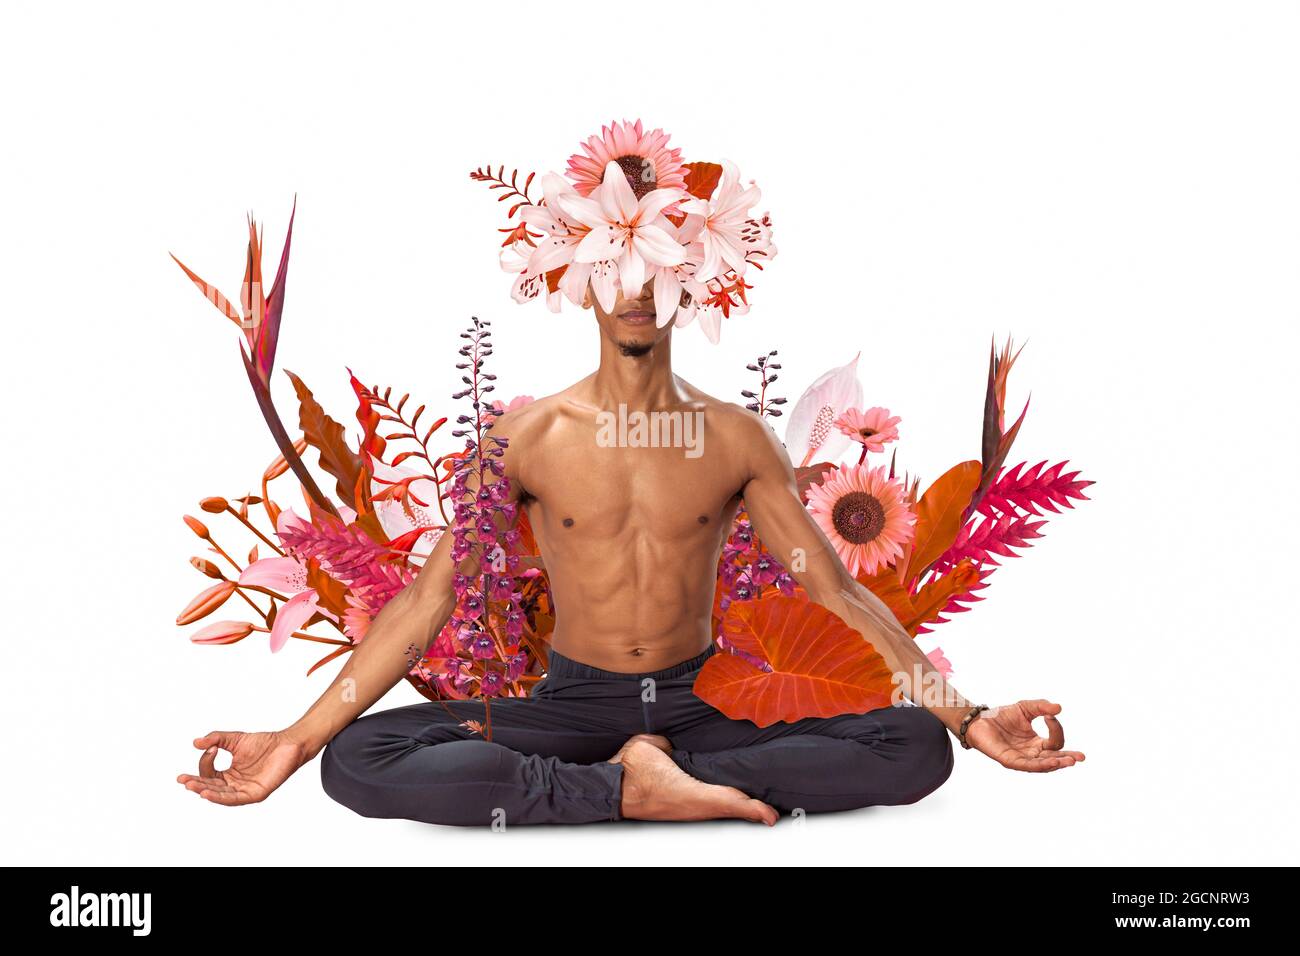 Diseño artístico abstracto de hombre joven haciendo yoga con flores alrededor del cuerpo aisladas sobre fondo blanco Foto de stock